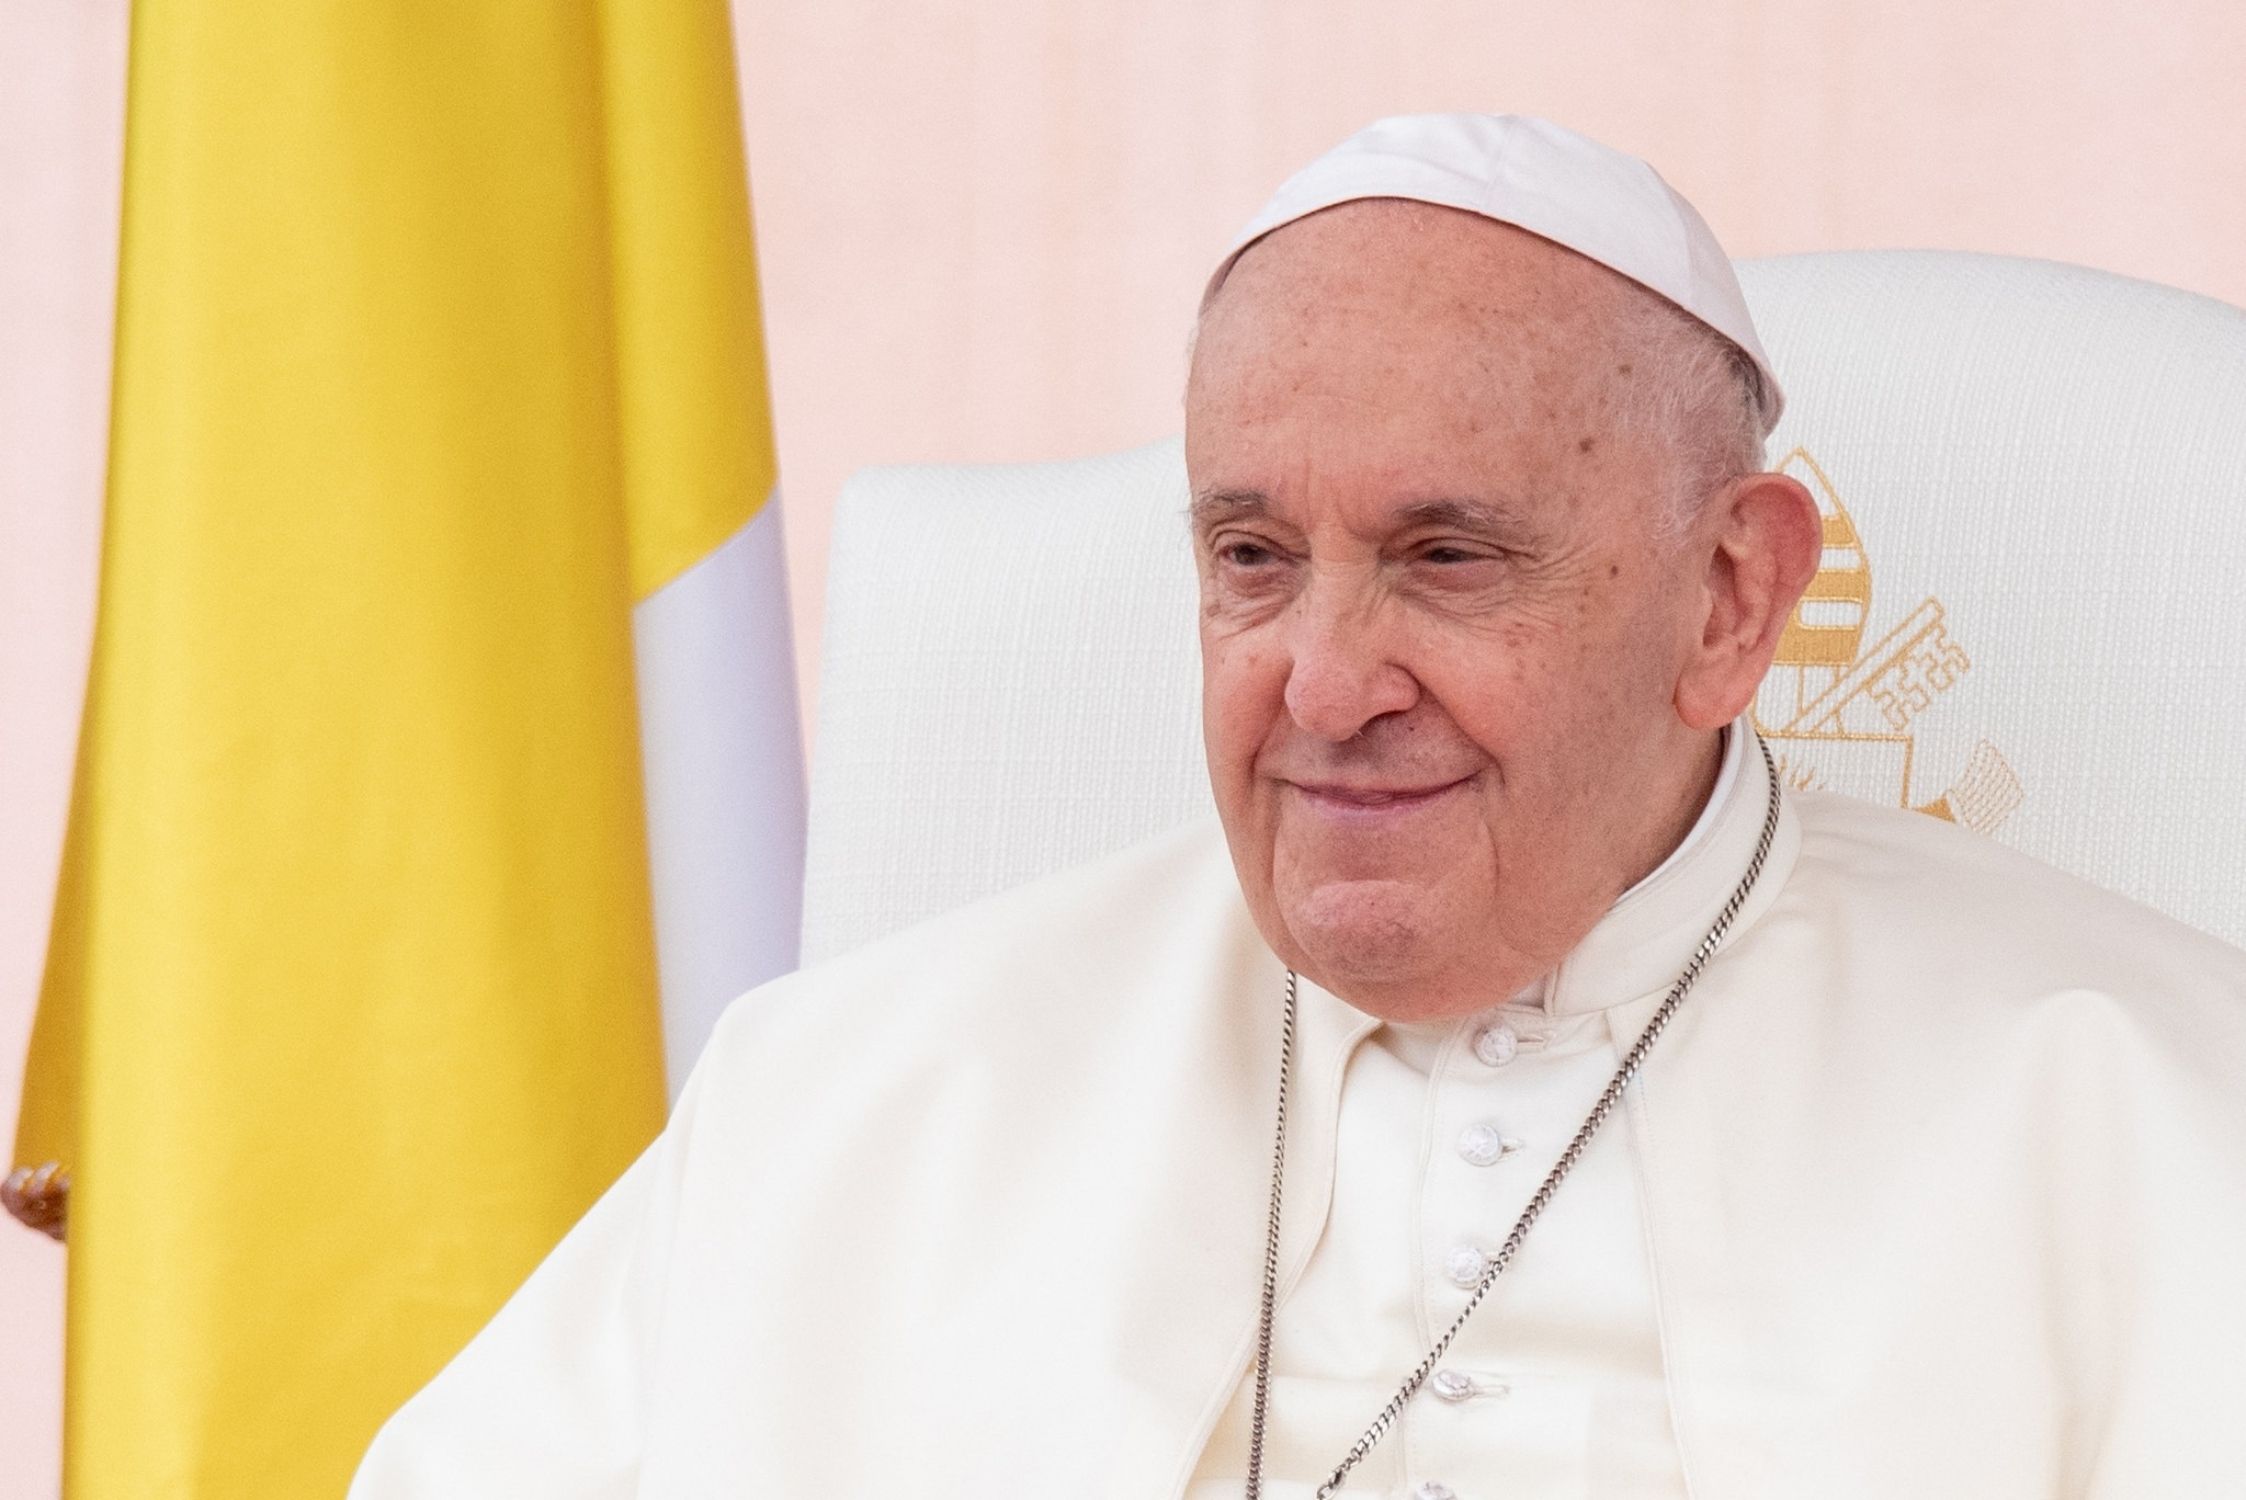 El Papa se reunirá con 6.000 abuelos y sus nietos para agradecer su contribución a la sociedad (Europa Press)